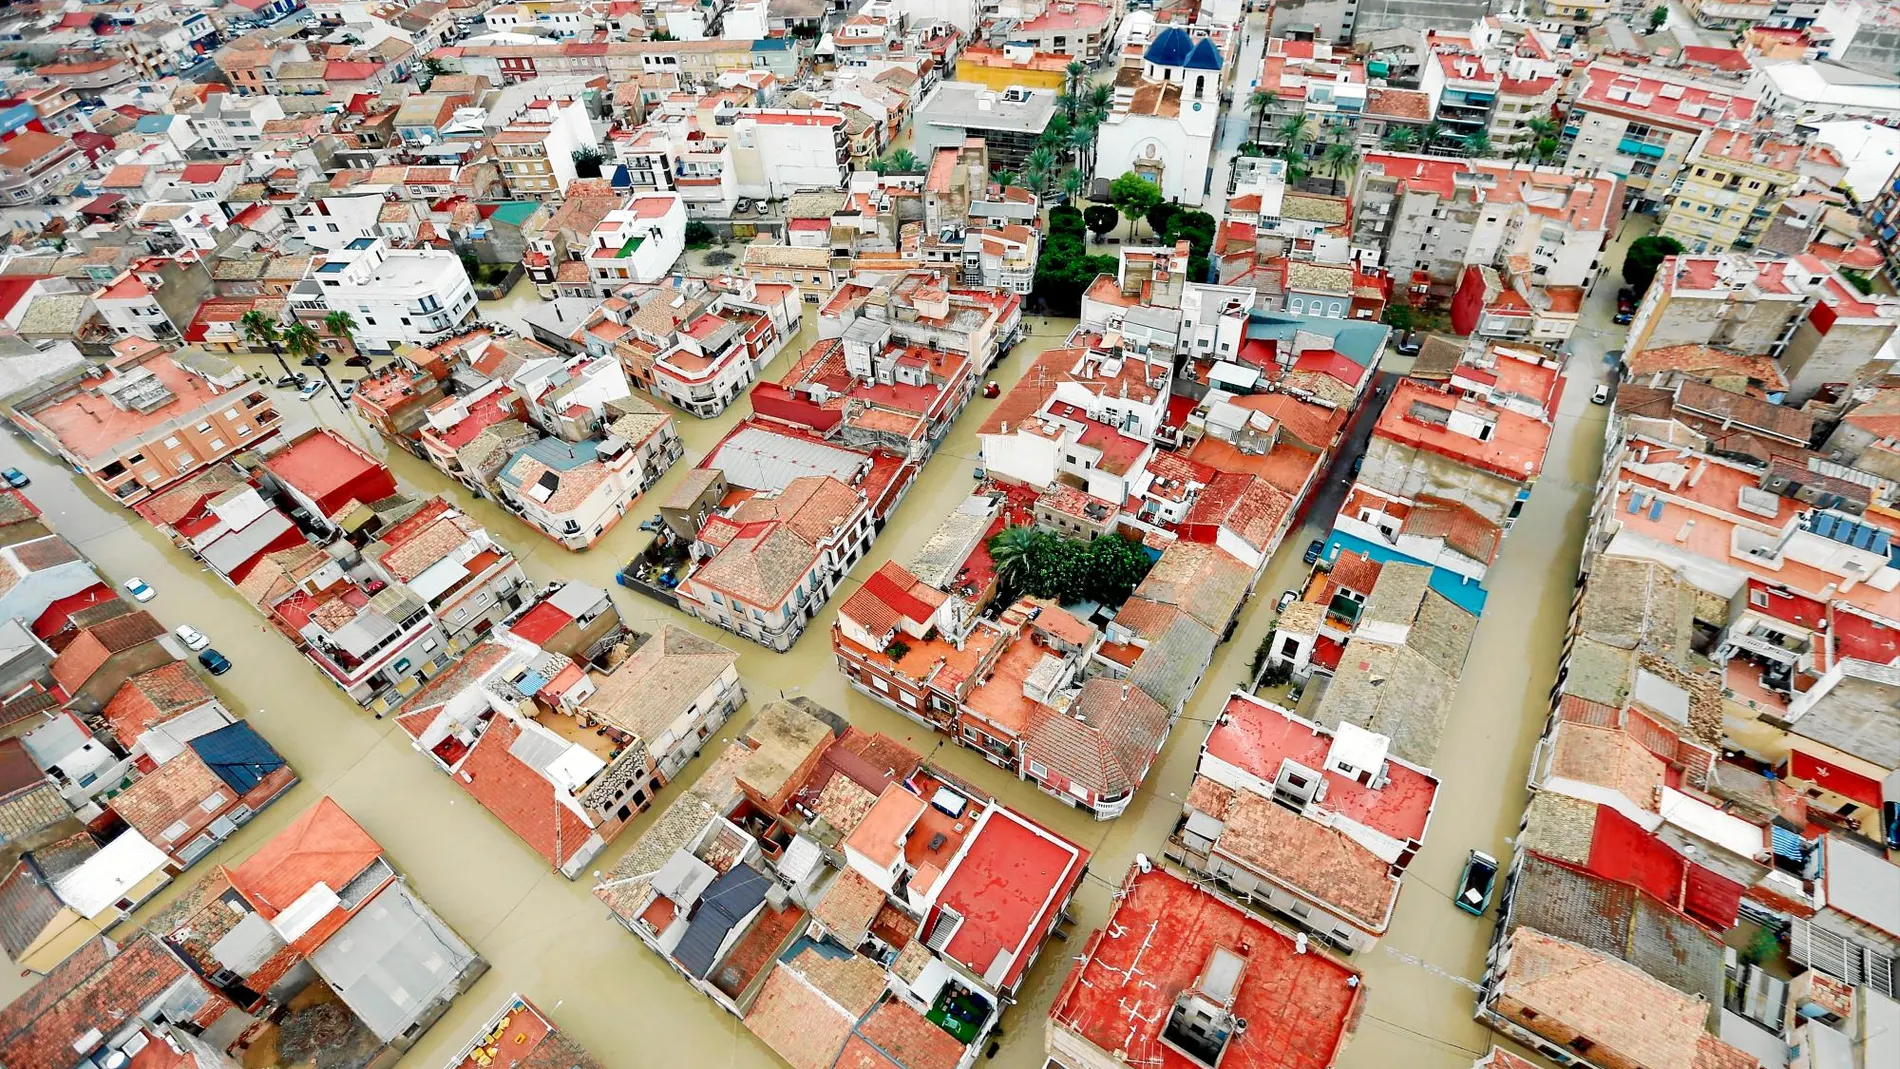 Imagen aérea de la ciudad de Dolores (Alicante) inundada a causa del desbordamiento del río Segura en octubre de 2019